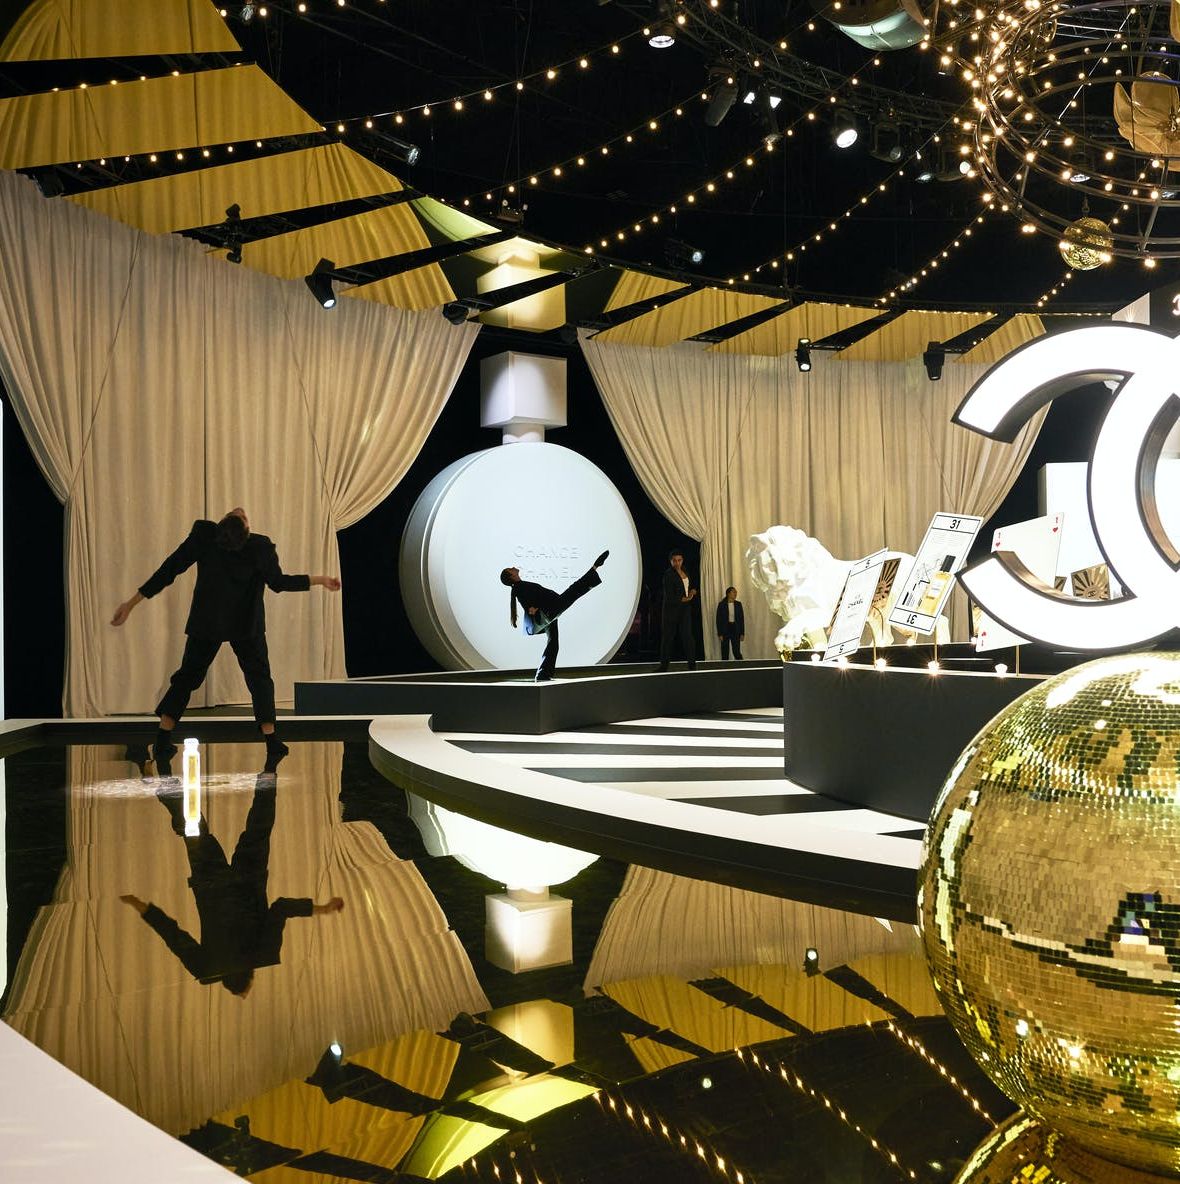 Fragrance exhibition Le Grand Numéro de Chanel opens in Paris